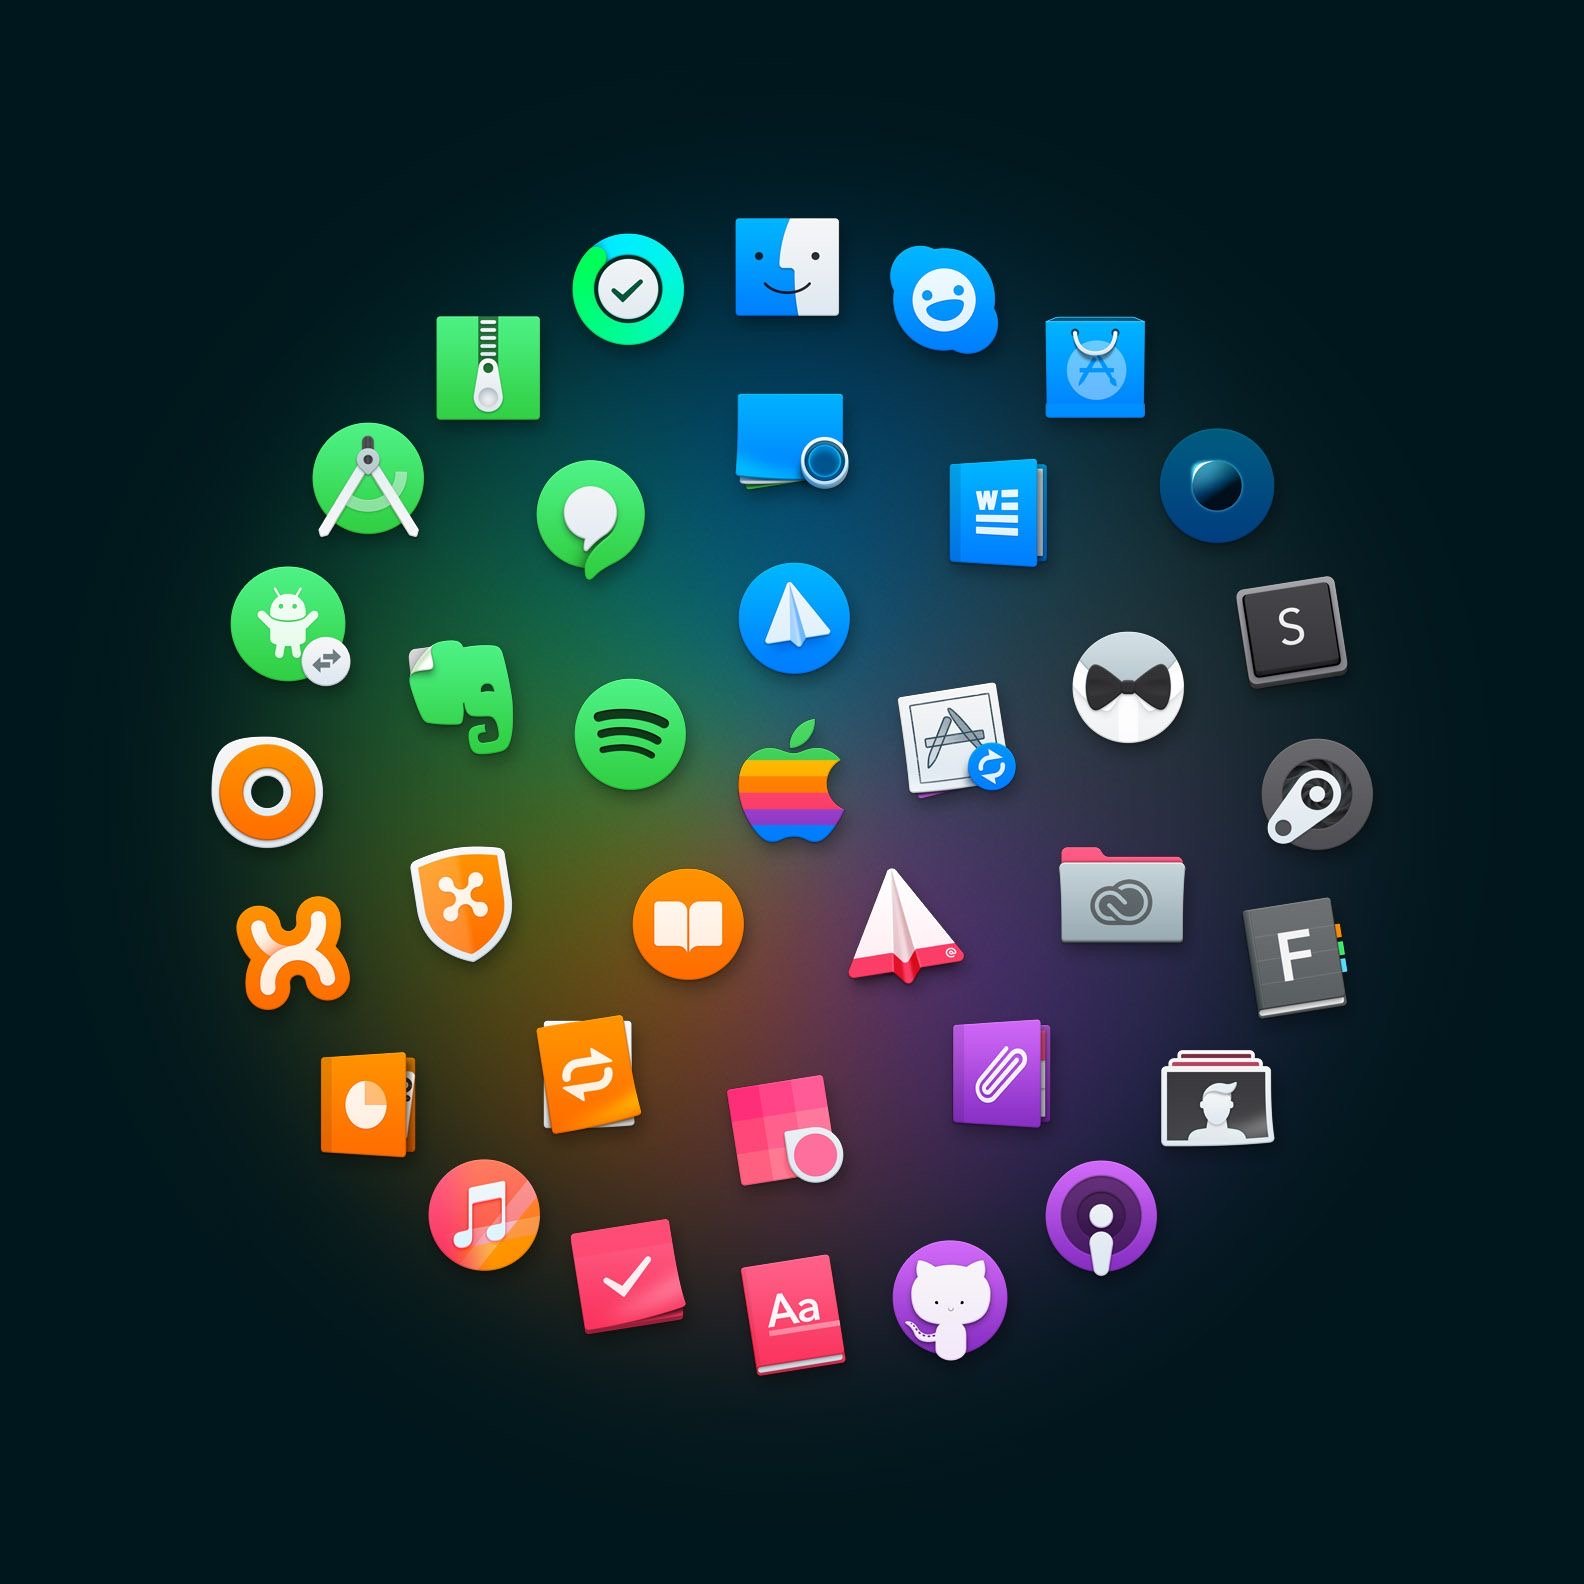 Os icon pack. Красивые иконки для приложений. Необычные иконки для приложений. Набор иконок для приложения. Иконки для приложений в стиле.